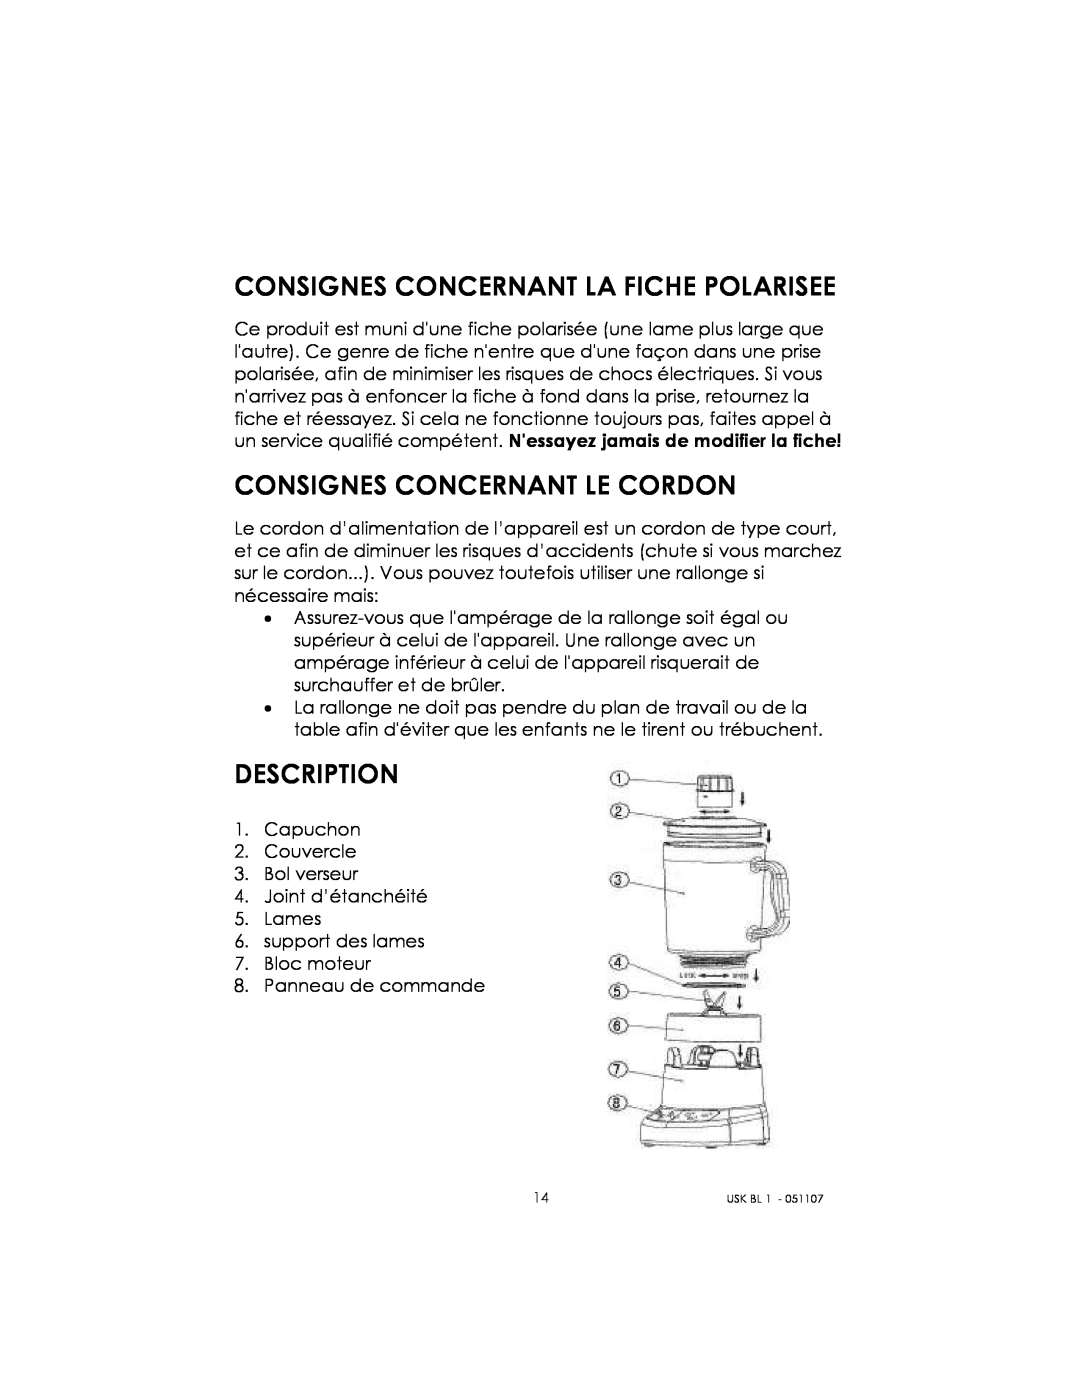 Kalorik USK BL 1 manual Consignes Concernant La Fiche Polarisee, Consignes Concernant Le Cordon, Description 